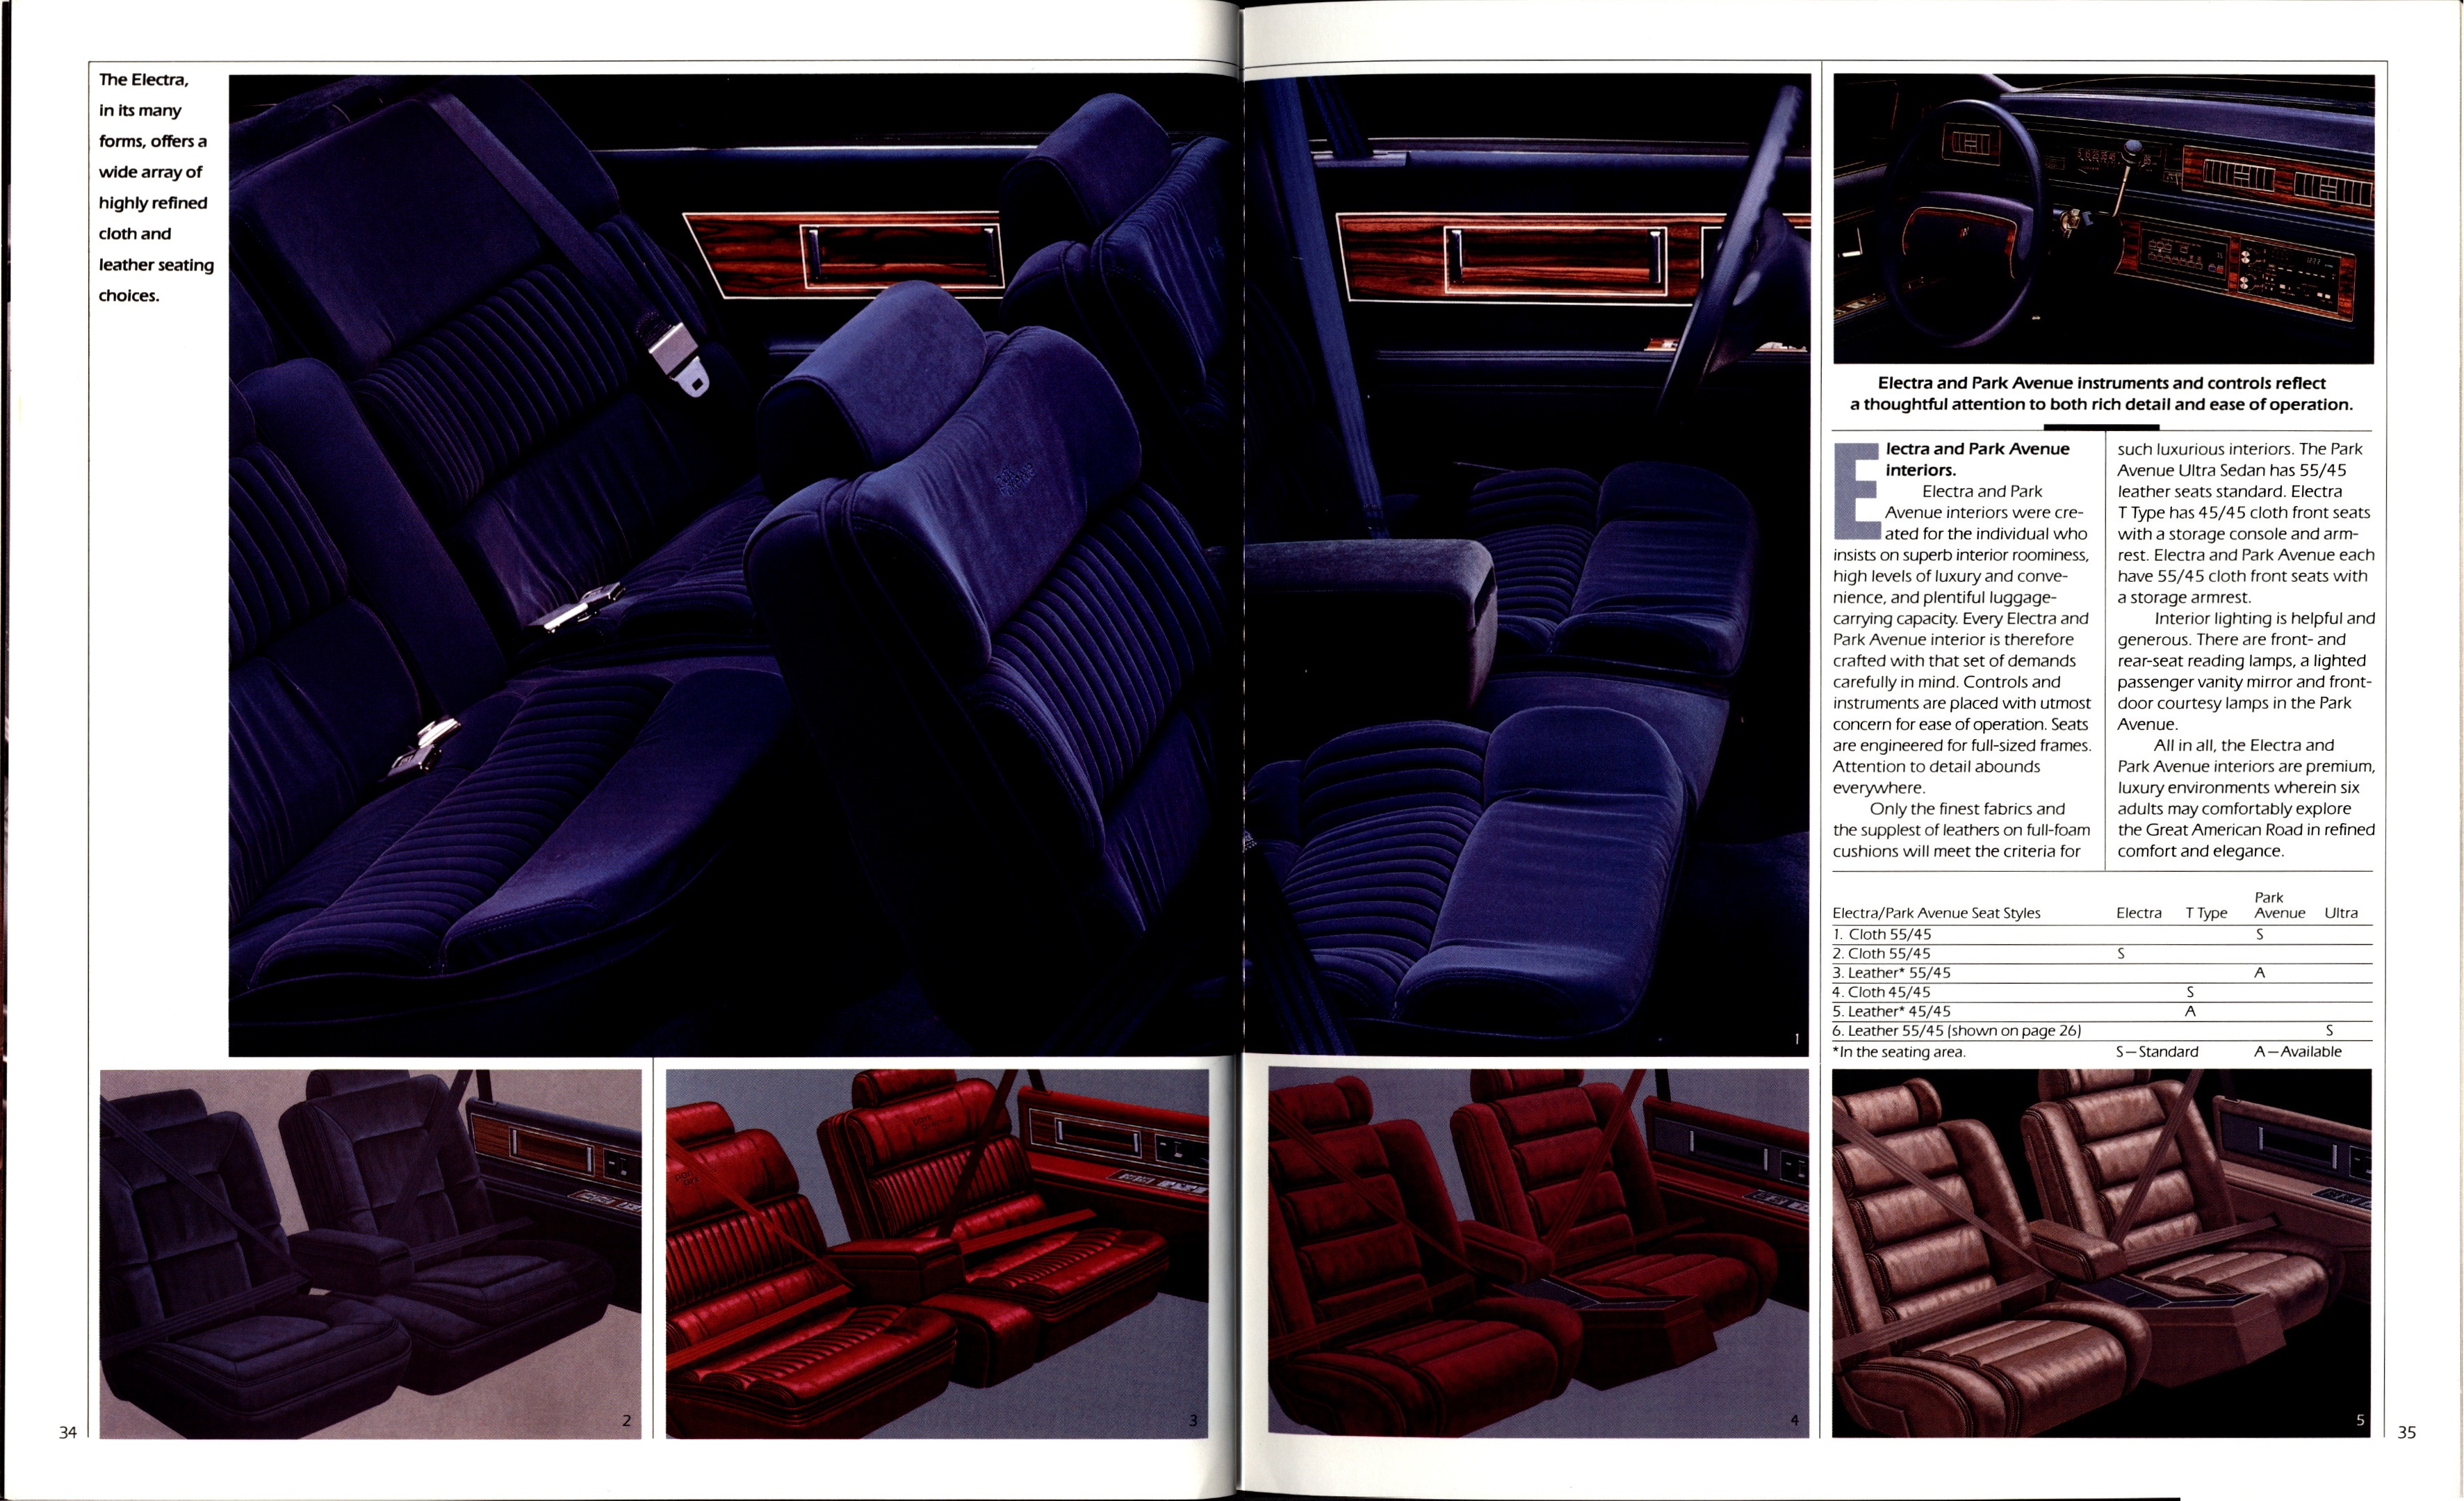 1989 Buick Full Line Prestige-34-35